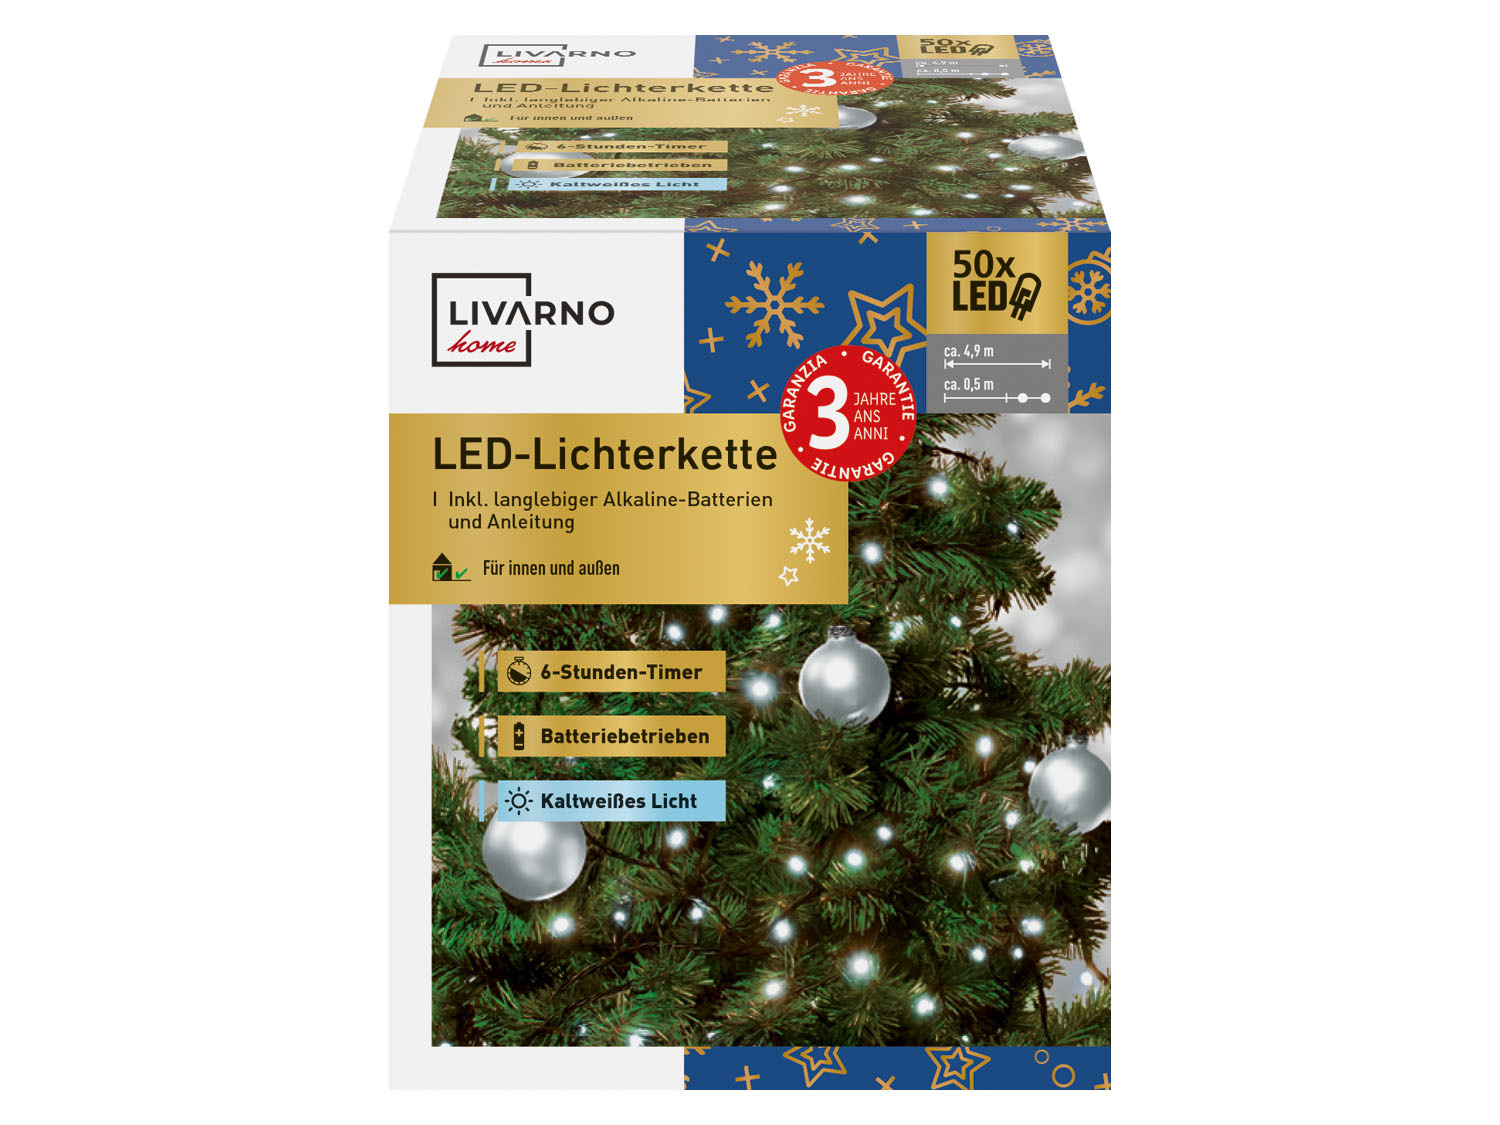 Groet Slot moord LIVARNO home LED-lichtsnoer online kopen | LIDL